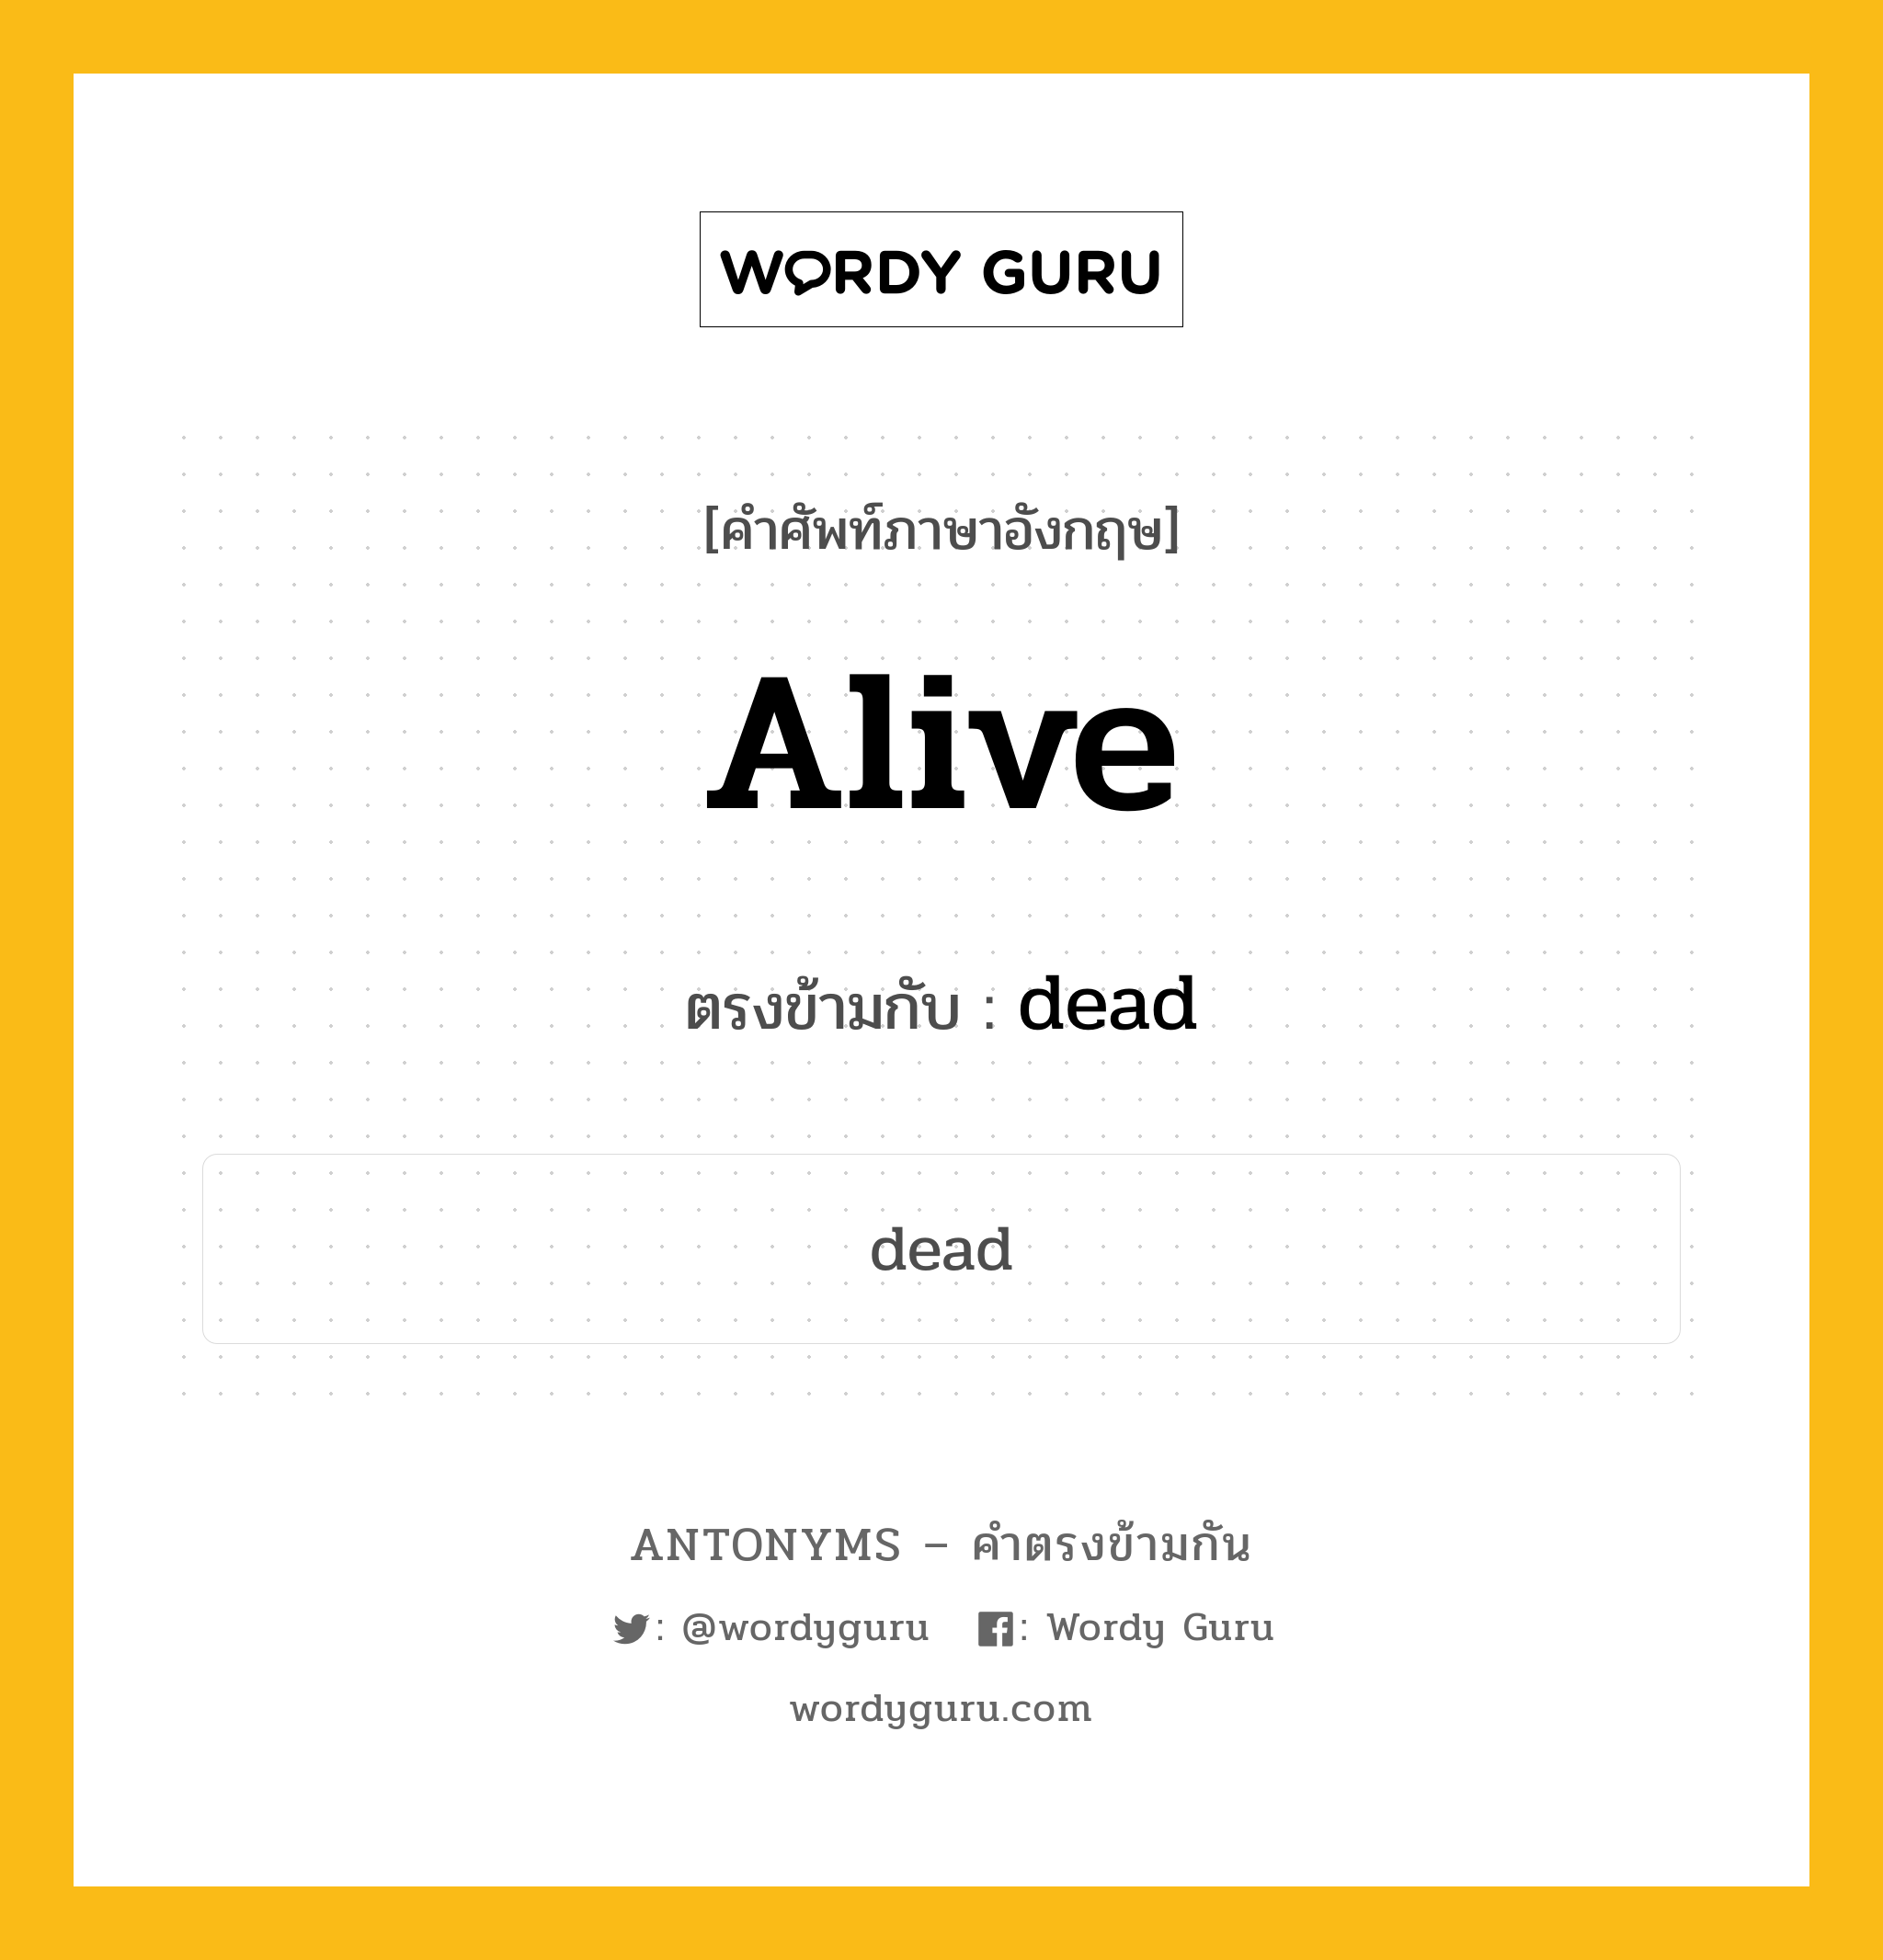 alive เป็นคำตรงข้ามกับคำไหนบ้าง?, คำศัพท์ภาษาอังกฤษ alive ตรงข้ามกับ dead หมวด dead